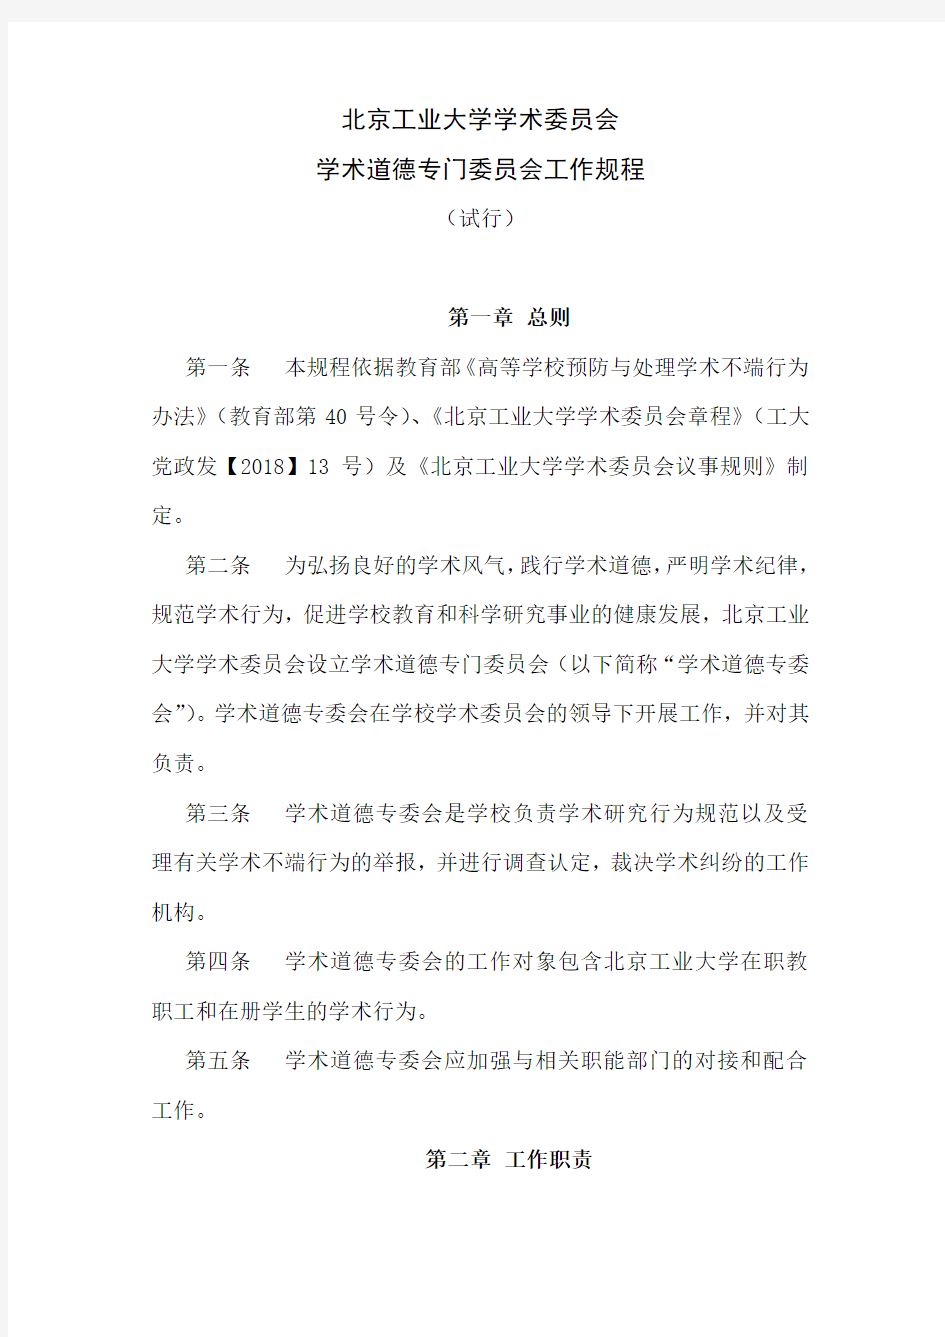 北京工业大学学术委员会学术道德专门委员会工作规程